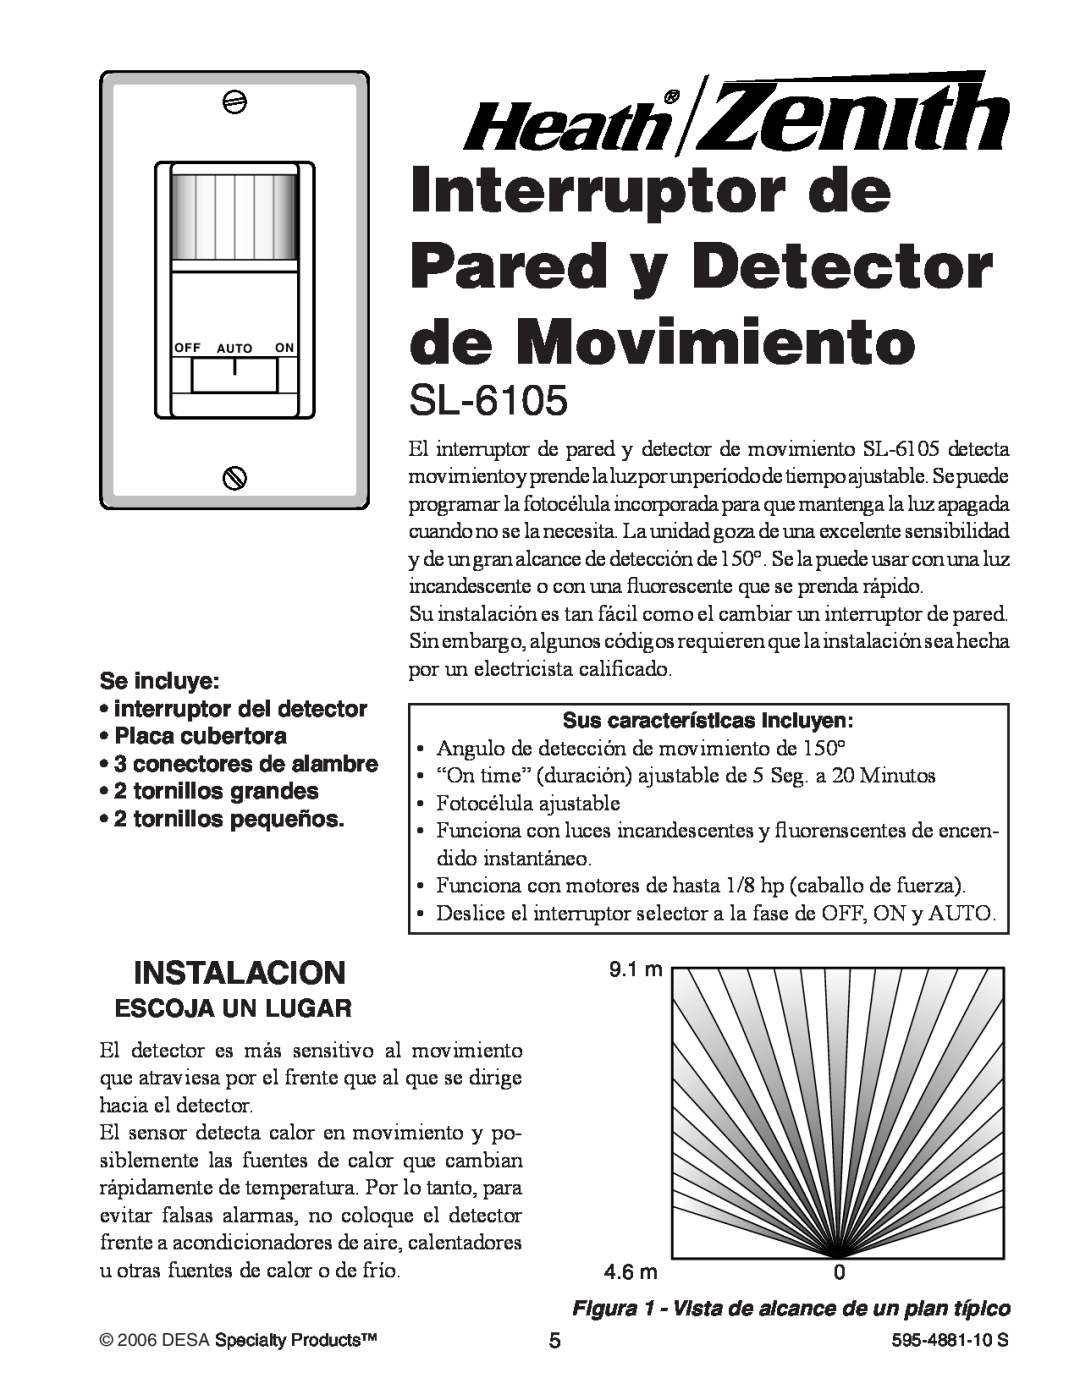 Heath Zenith SL-6105 manual Interruptor de Pared y Detector de Movimiento, Instalacion, Se incluye interruptor del detector 